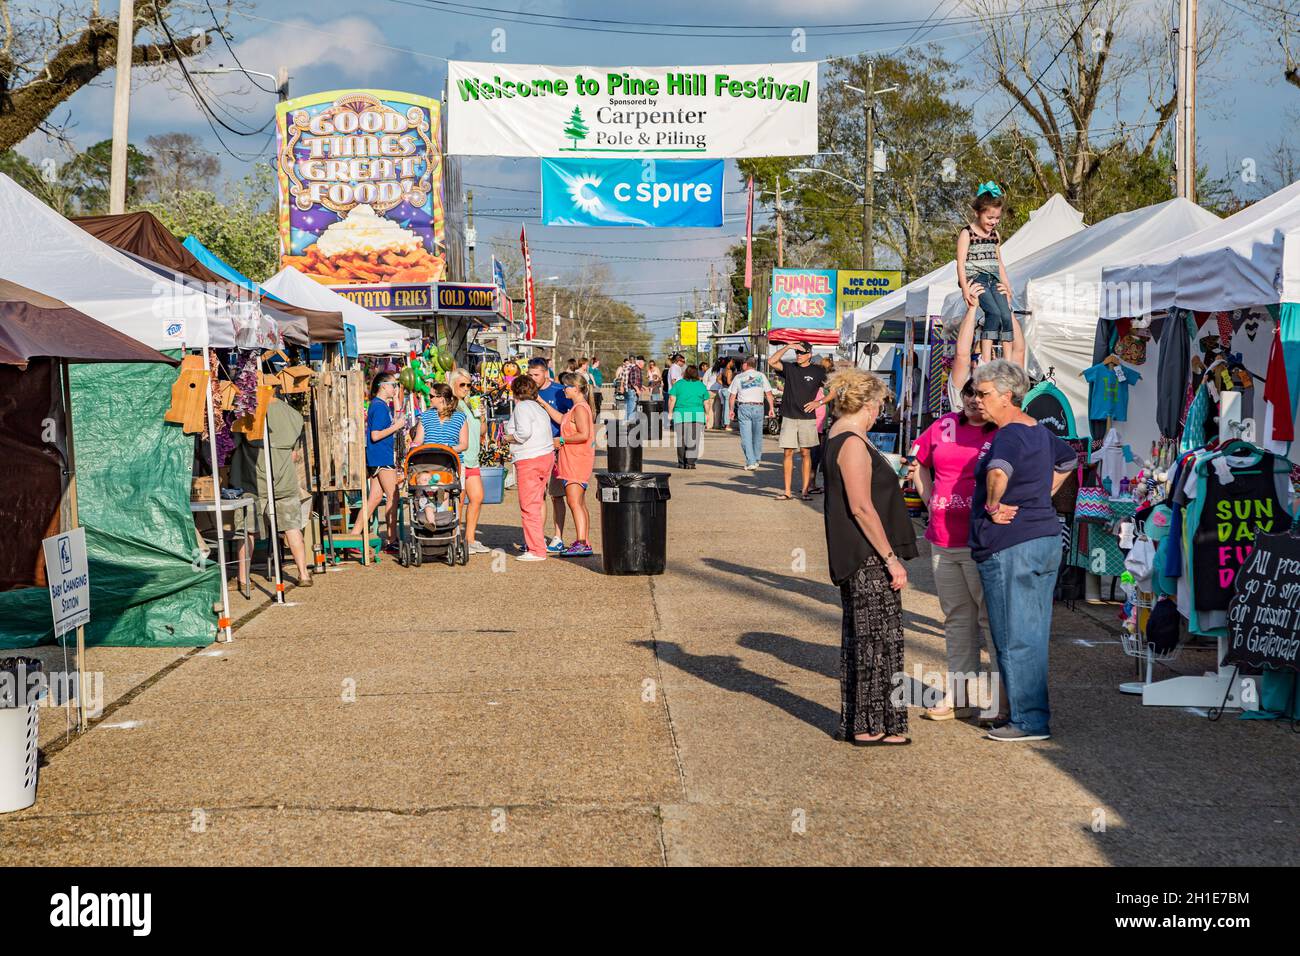 Los visitantes se reúnen en la calle entre tiendas de venta en la feria de la calle Pine Hills Festival en Stone County, Mississippi Foto de stock